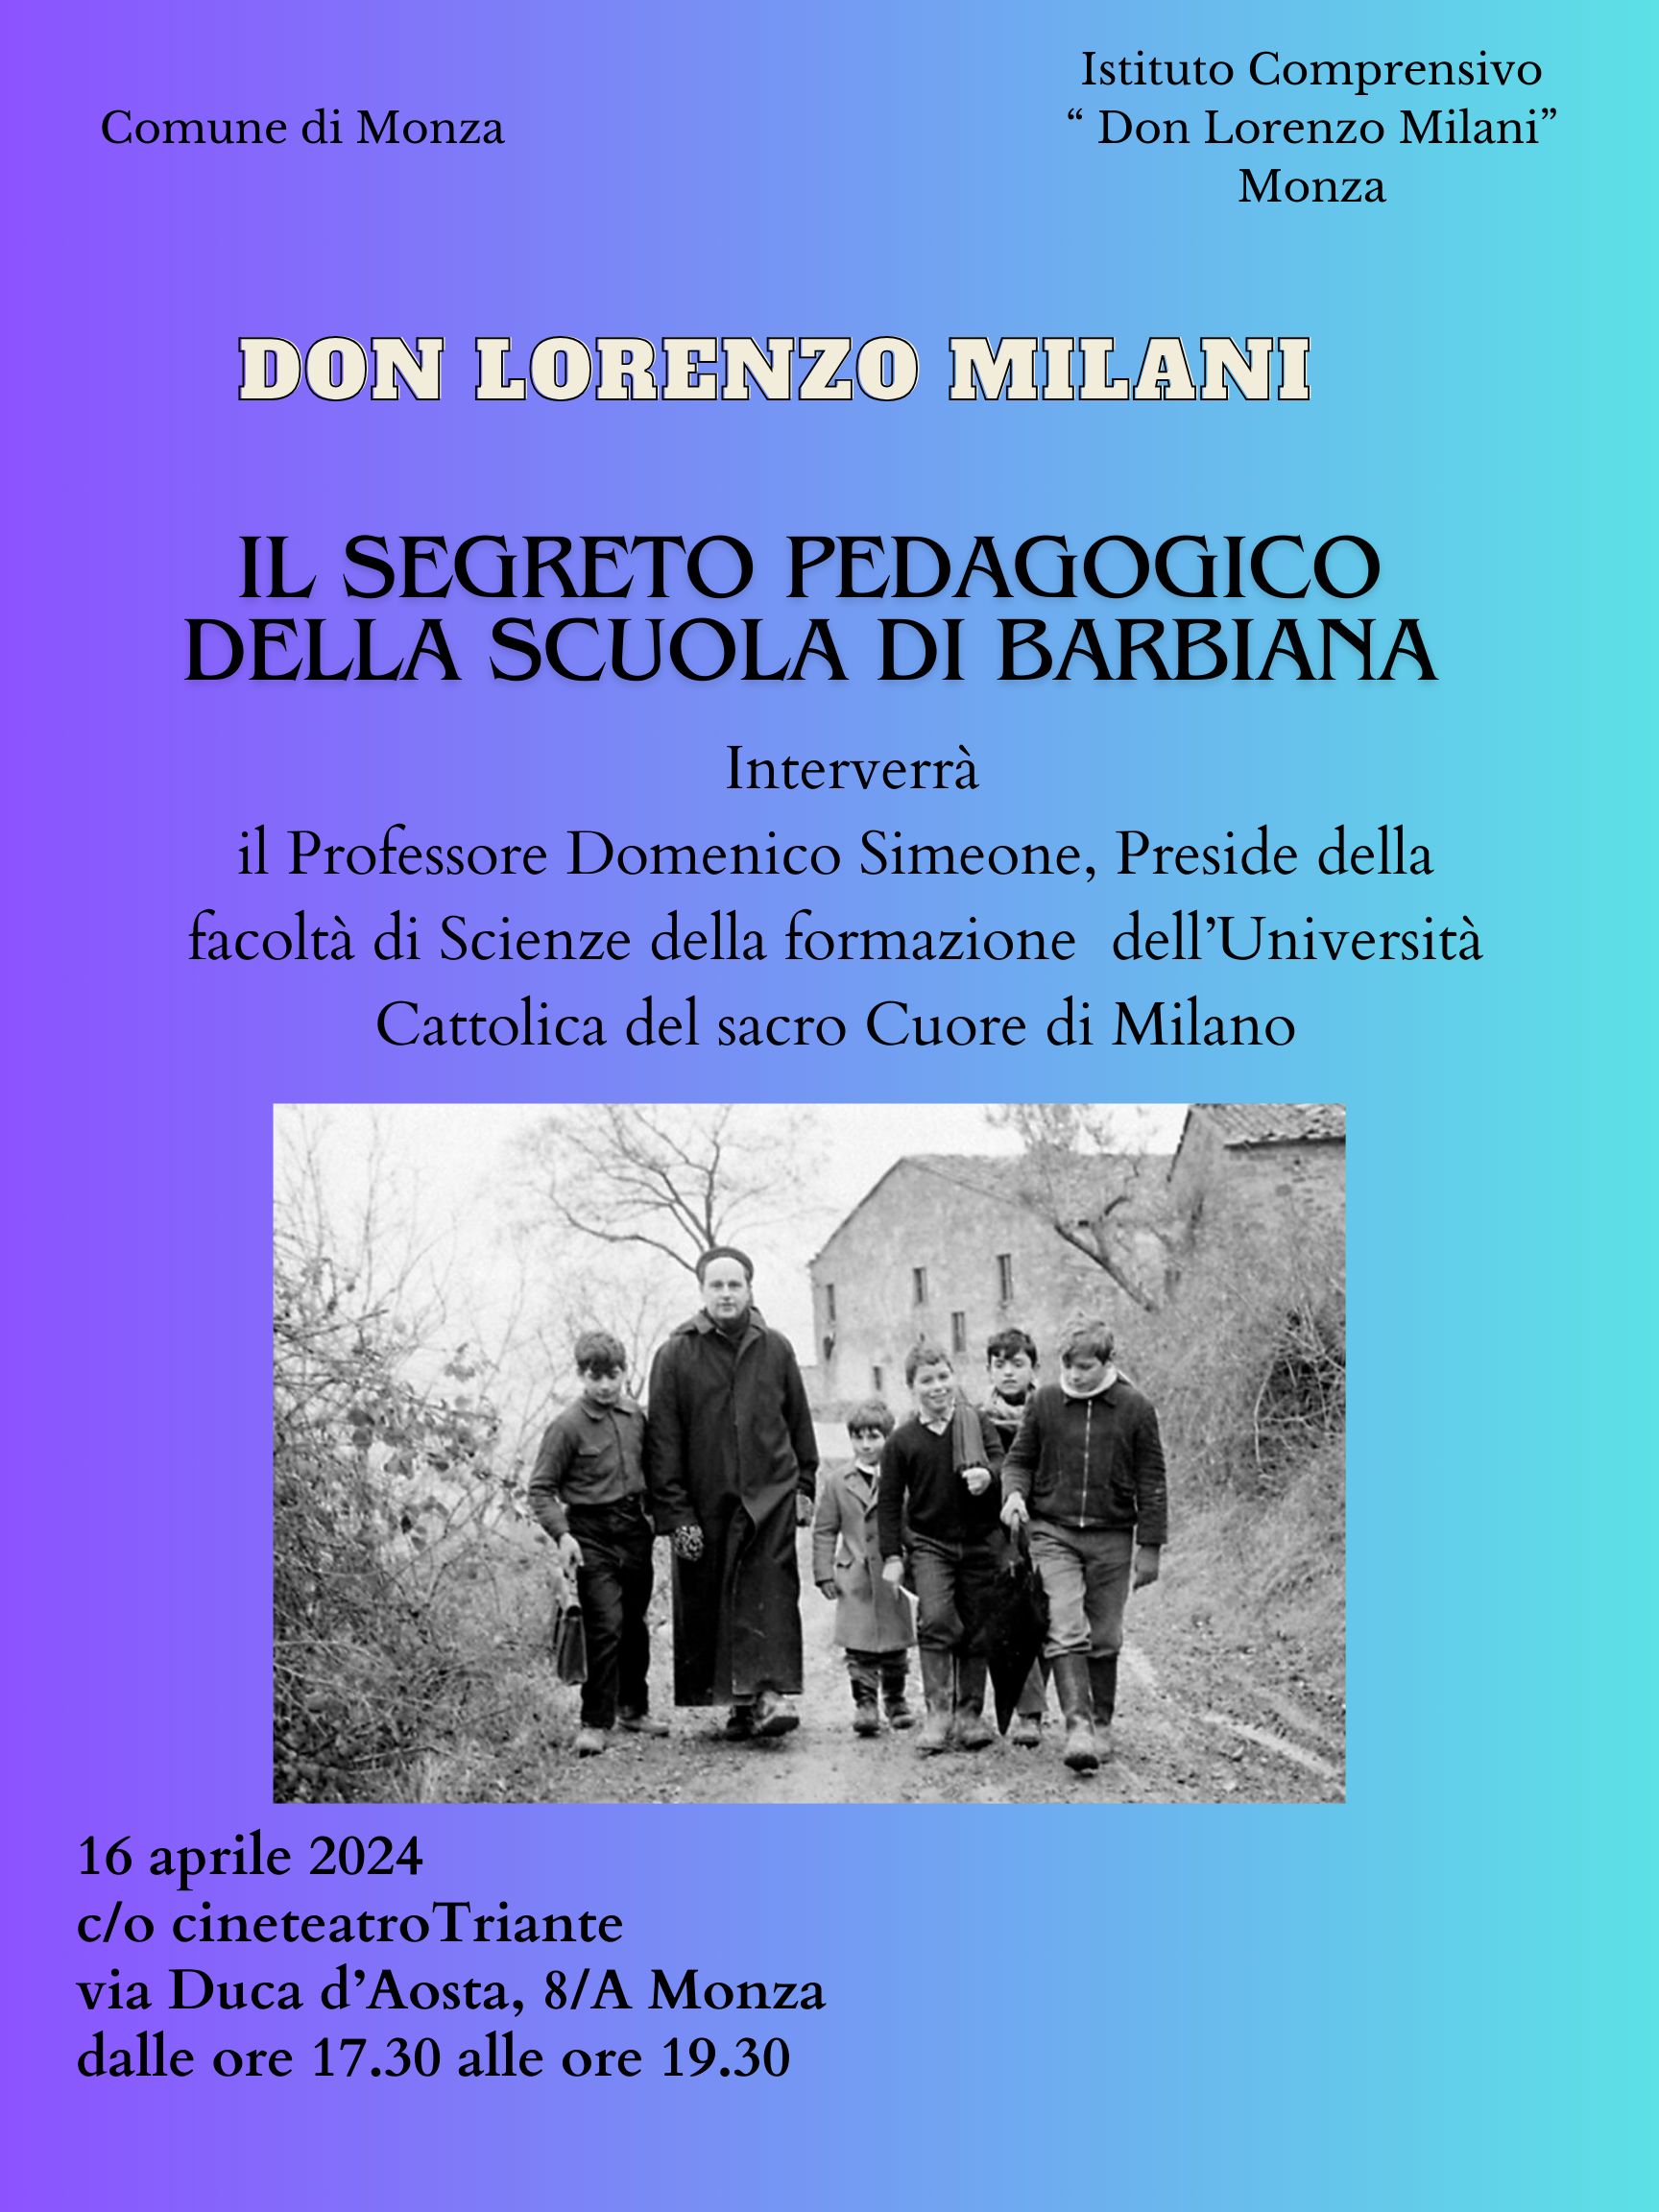  “Lectio magistralis” del Professor Domenico Simeone sulla figura di Don Lorenzo Milani